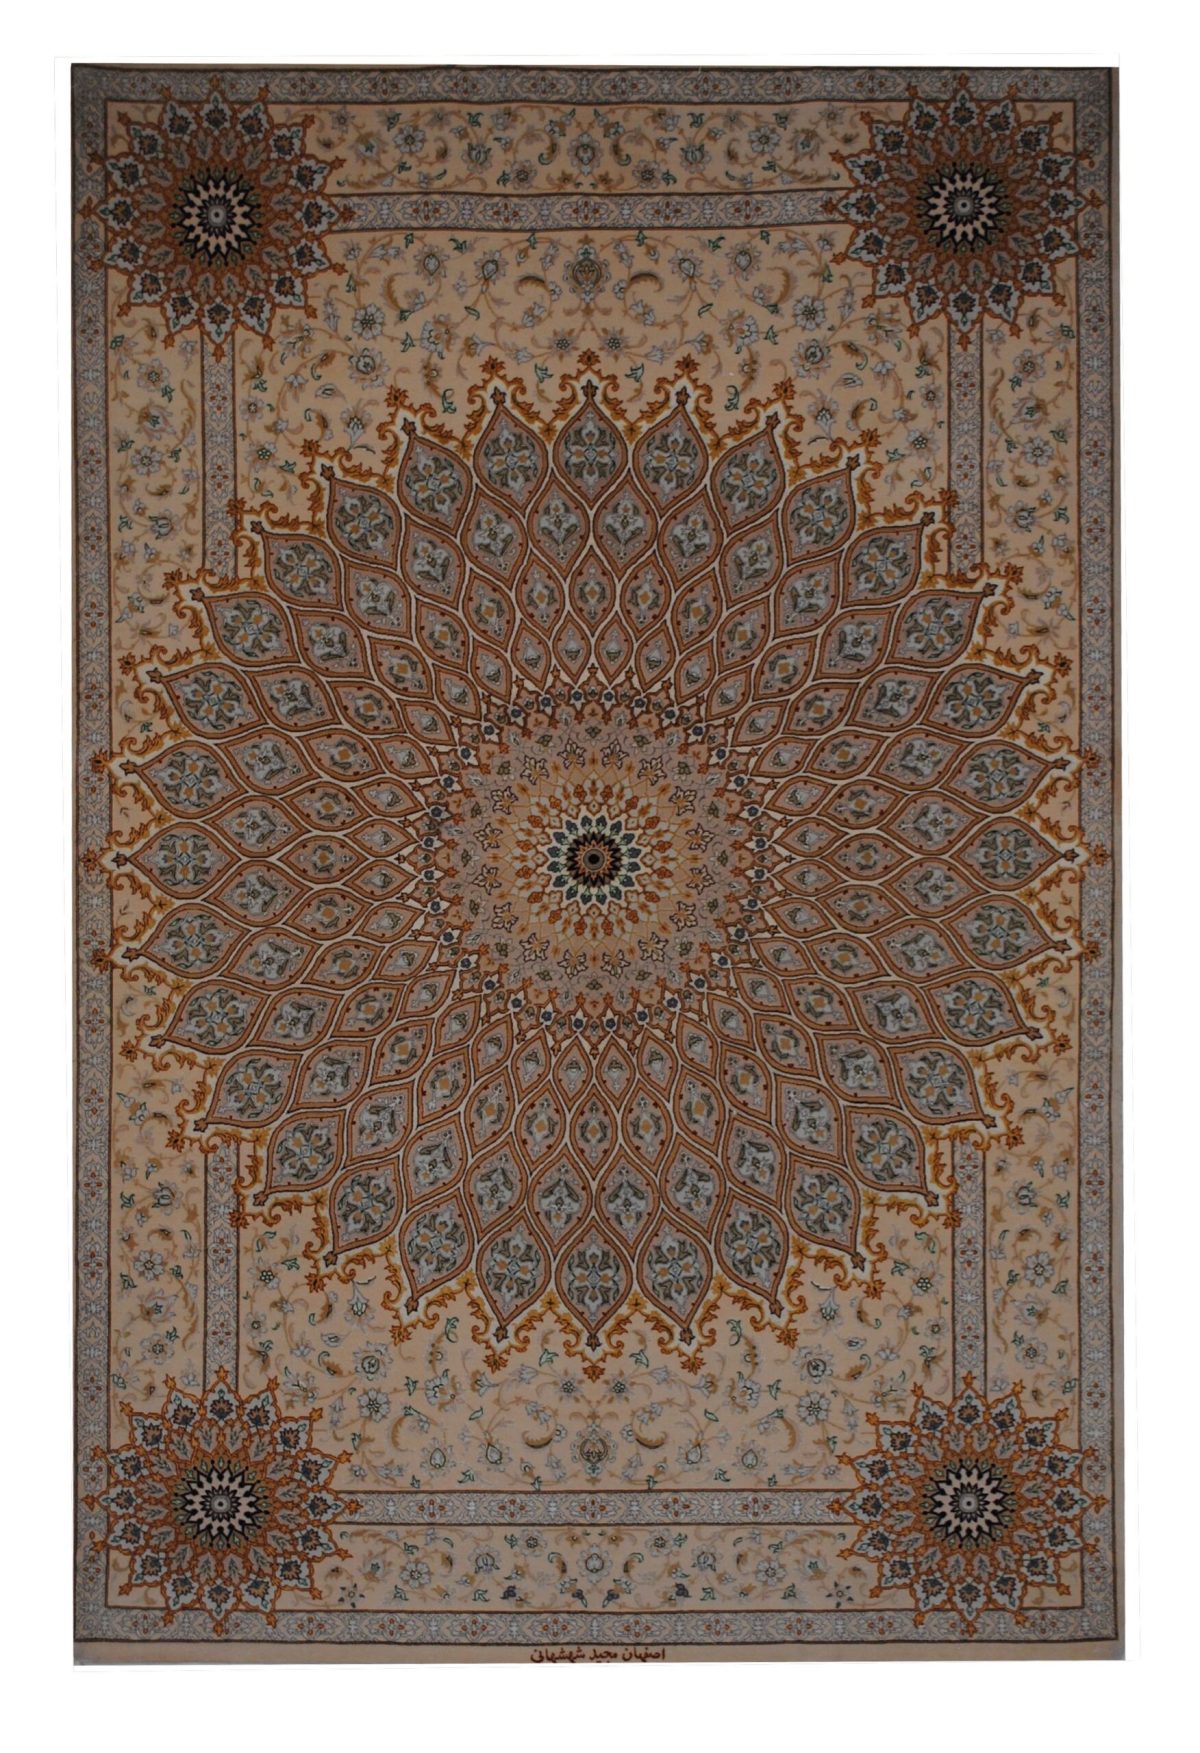 Persian Esfahan 5' 3" x 7' 11" - Shabahang Royal Carpet